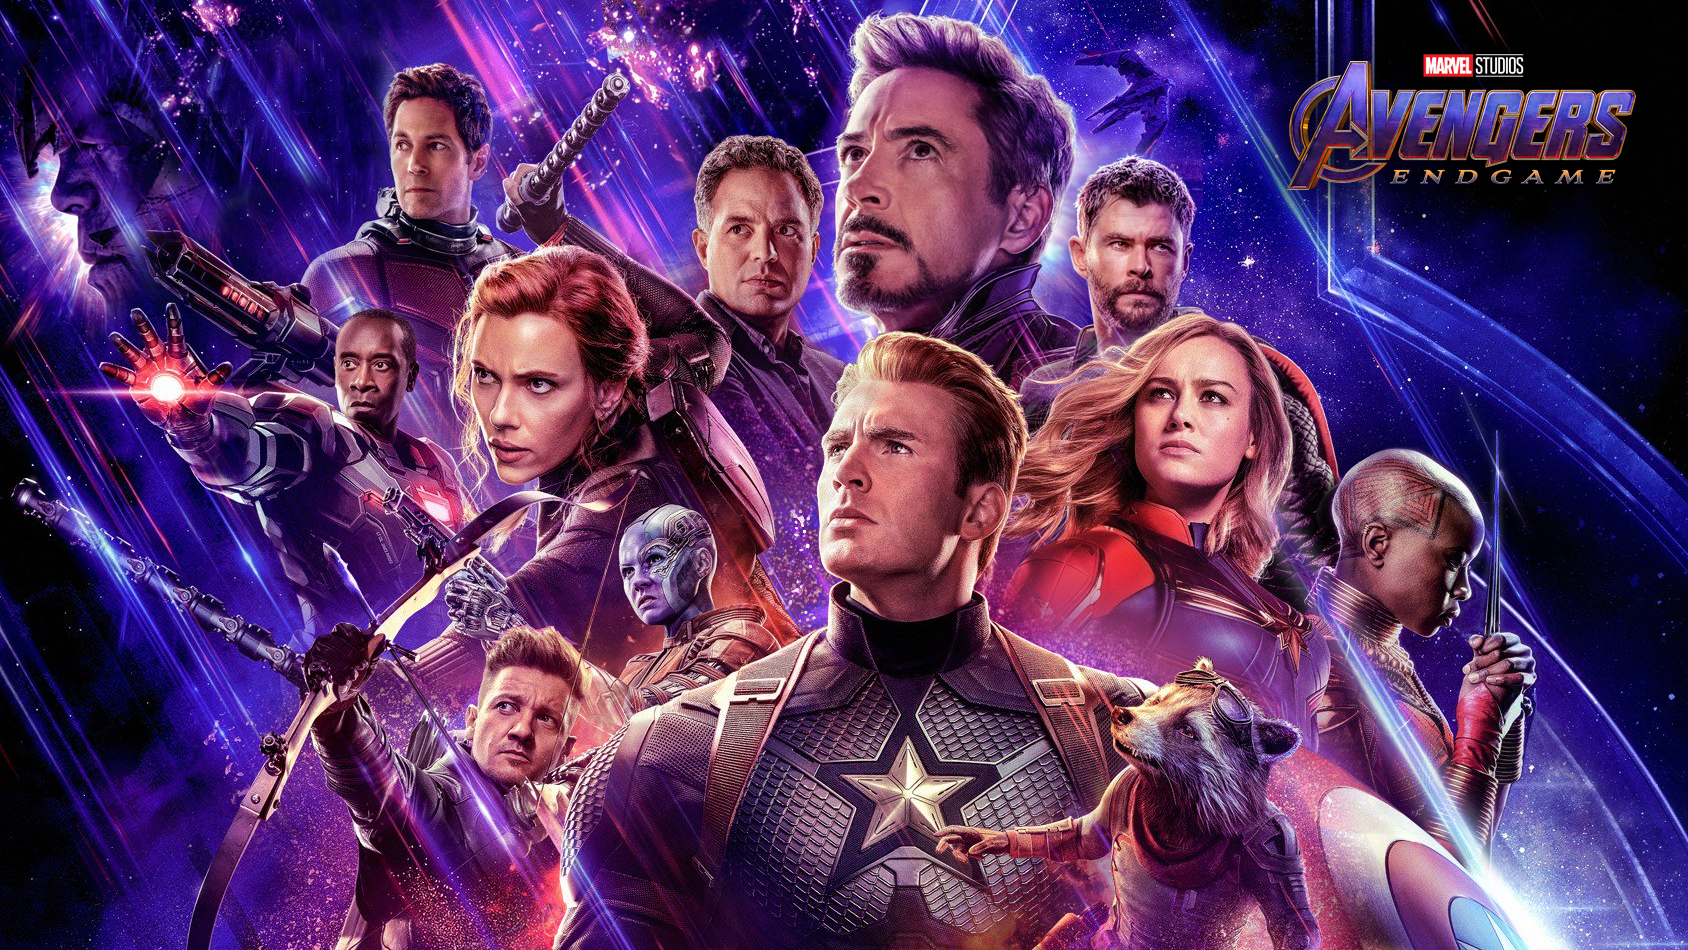 Avengers 5 donne officiellement de ses nouvelles, ça divise déjà beaucoup